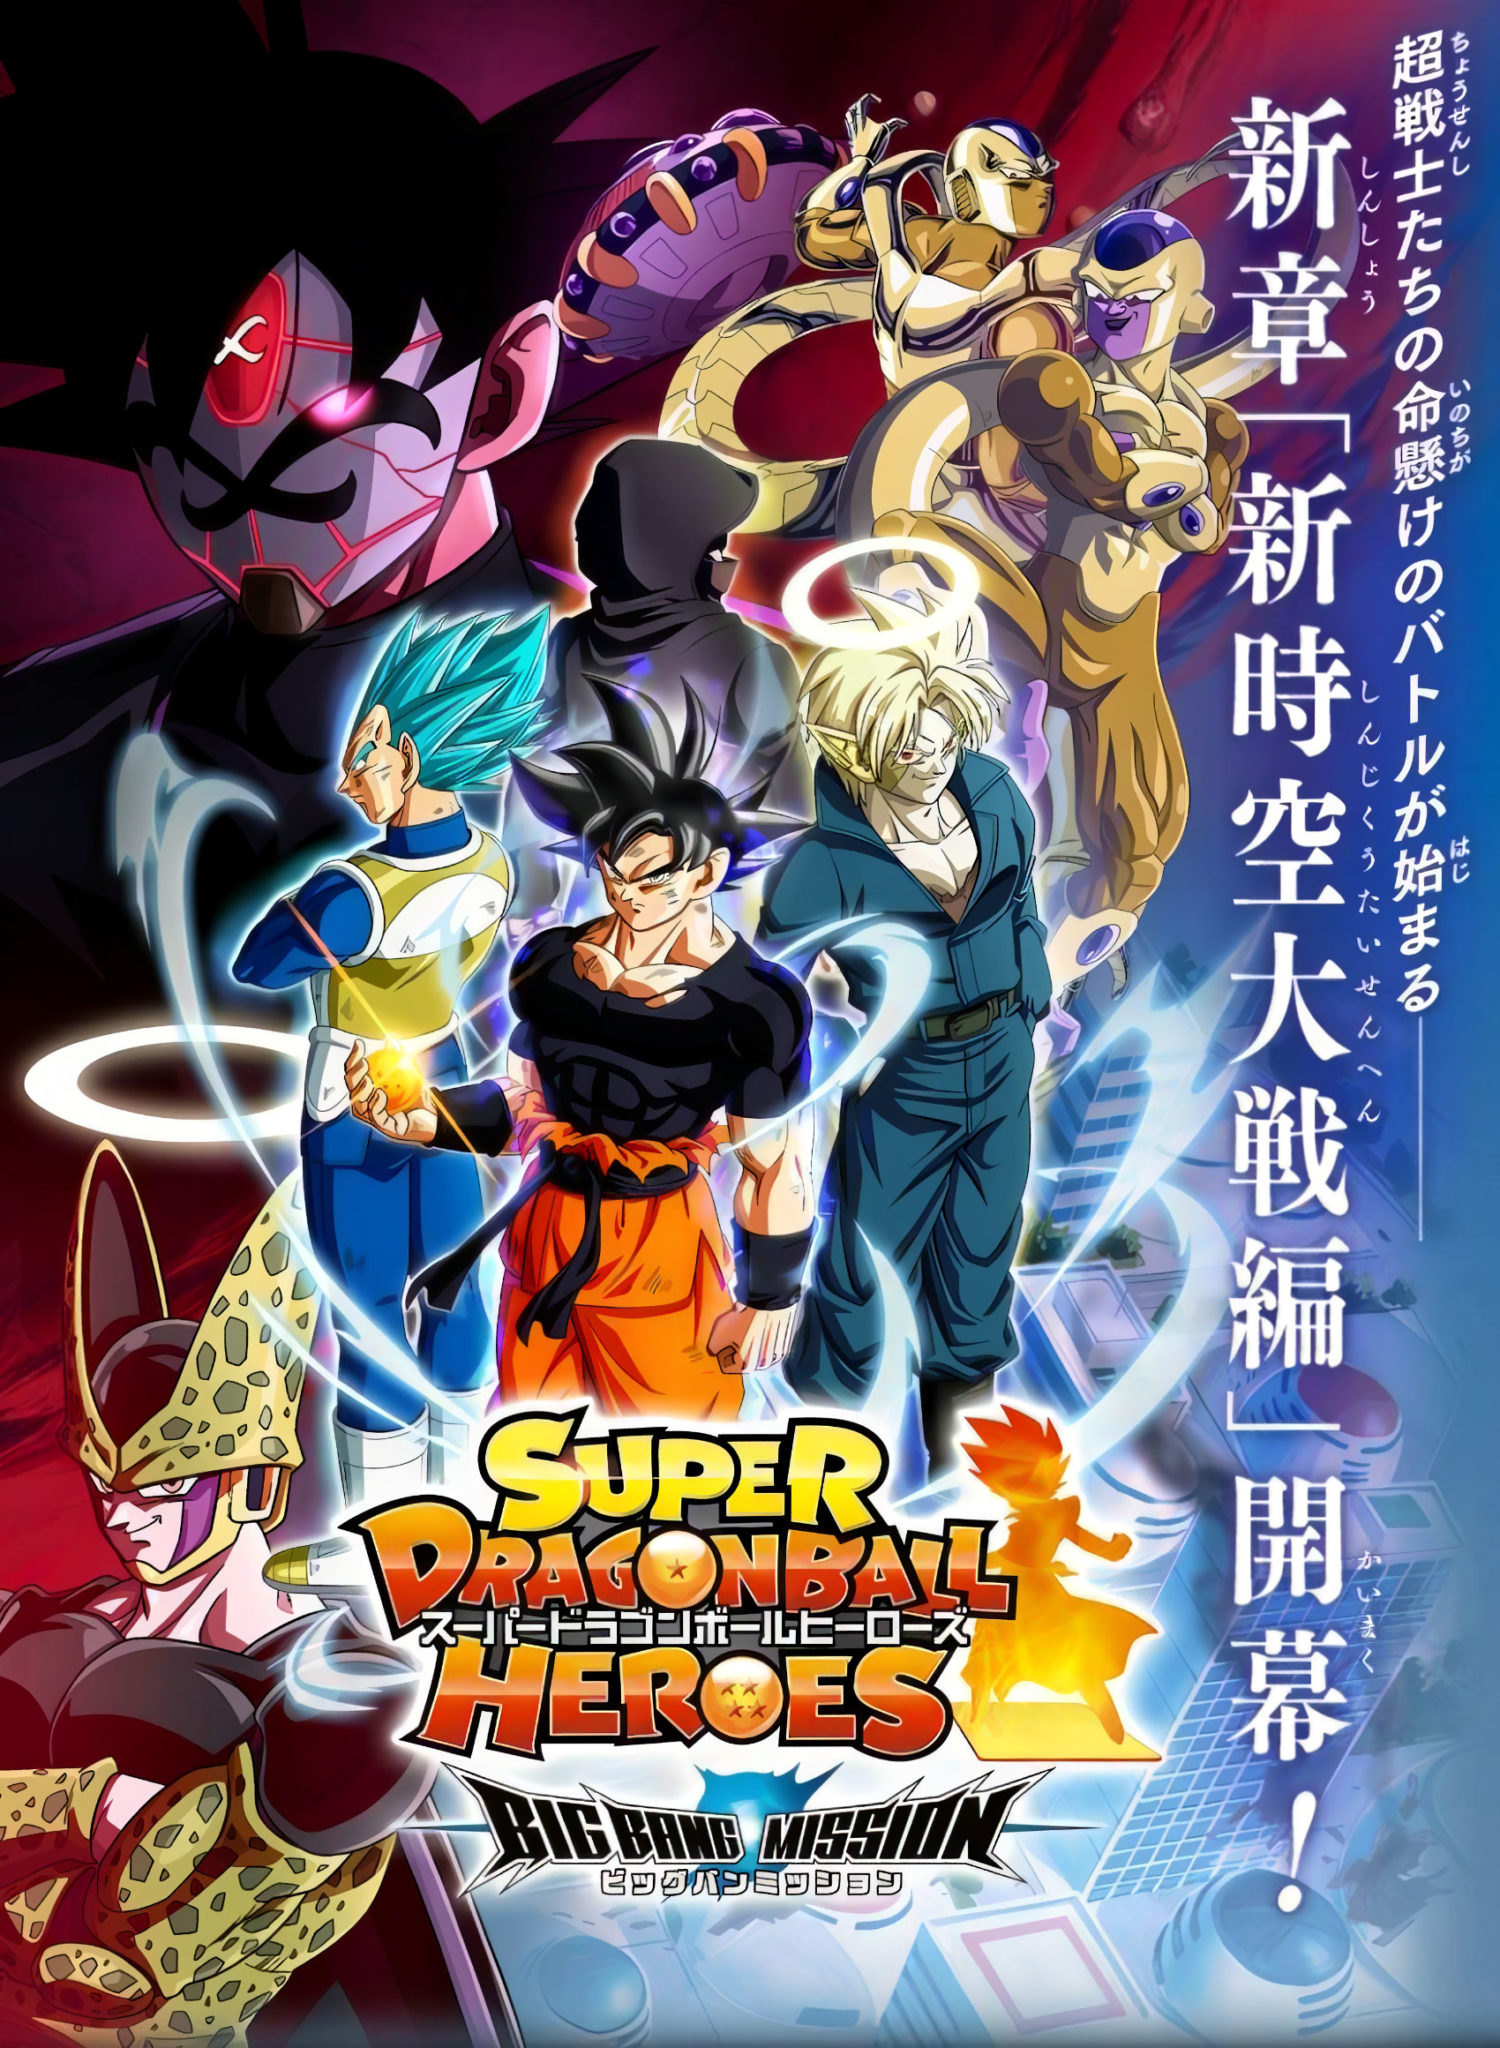 Mùa 2 của anime Dragon Ball Super sẽ chứa những điều đặc biệt nào dành cho  người hâm mộ?